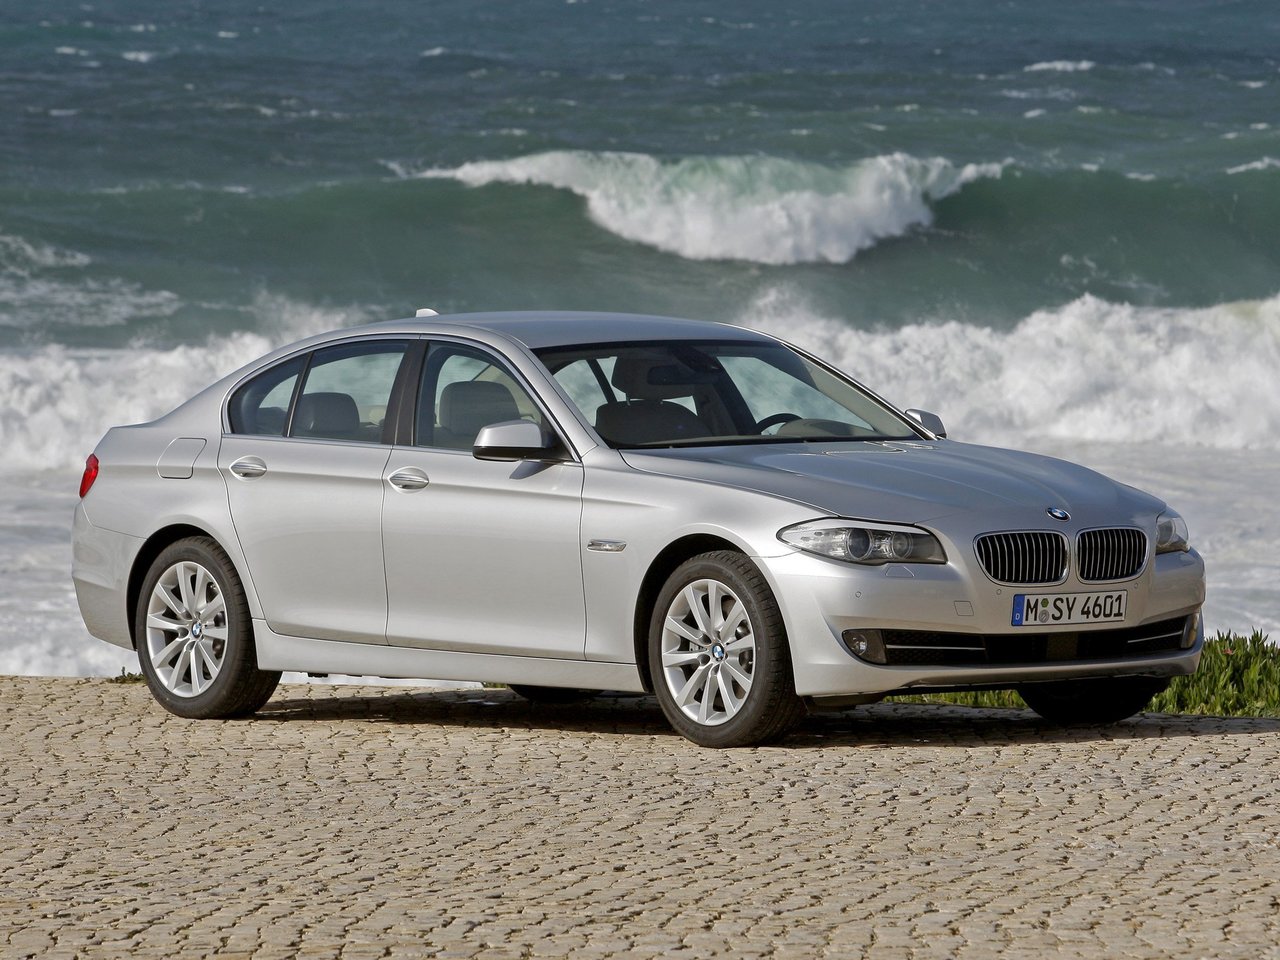 Расход газа десяти комплектаций седана BMW 5 серия. Разница стоимости заправки газом и бензином. Автономный пробег до и после установки ГБО.